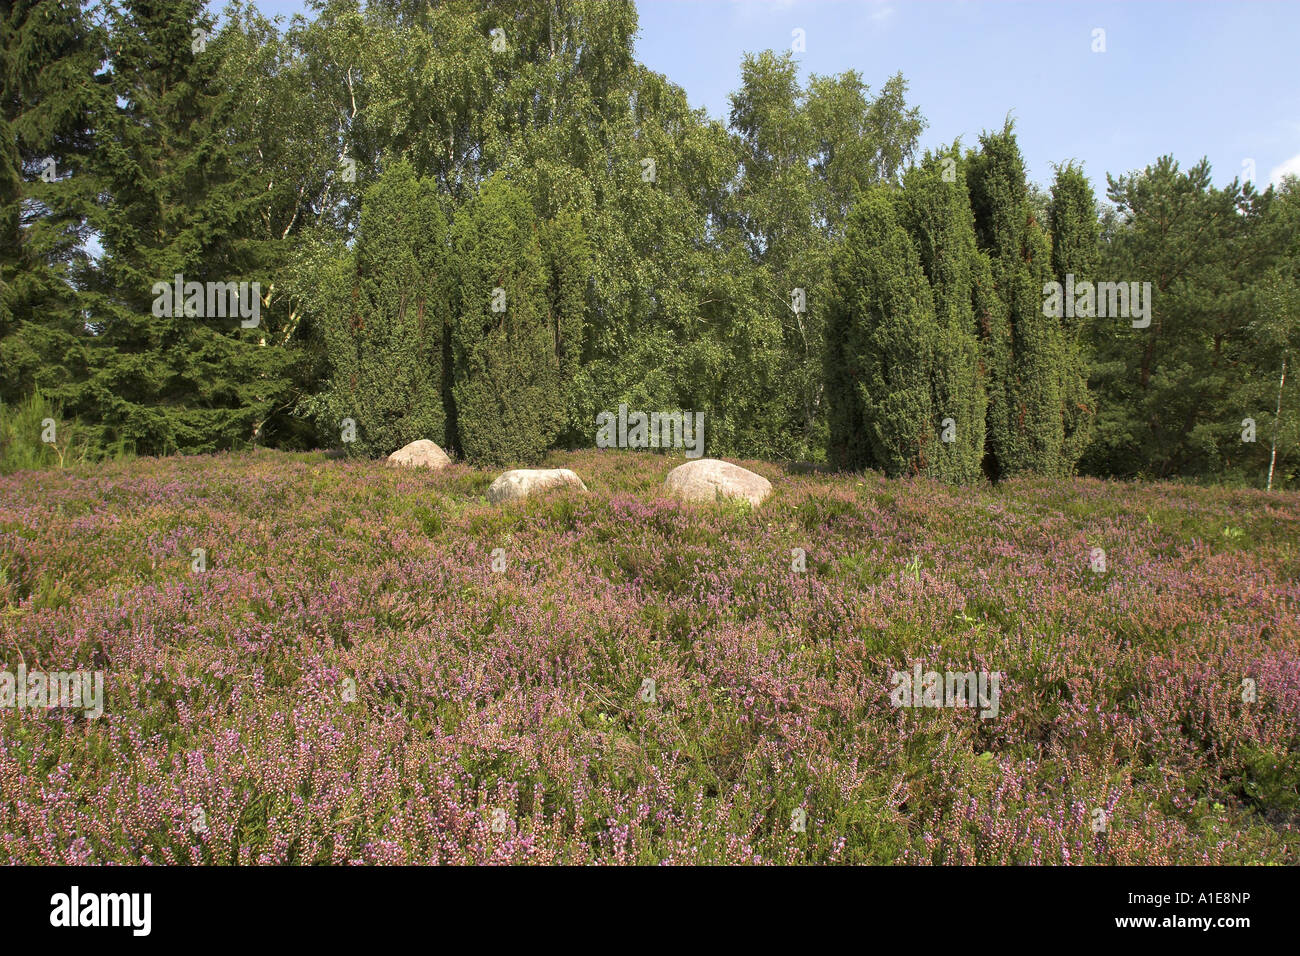 heather, ling (Calluna vulgaris), and juniper (Juniperus communis) Stock Photo